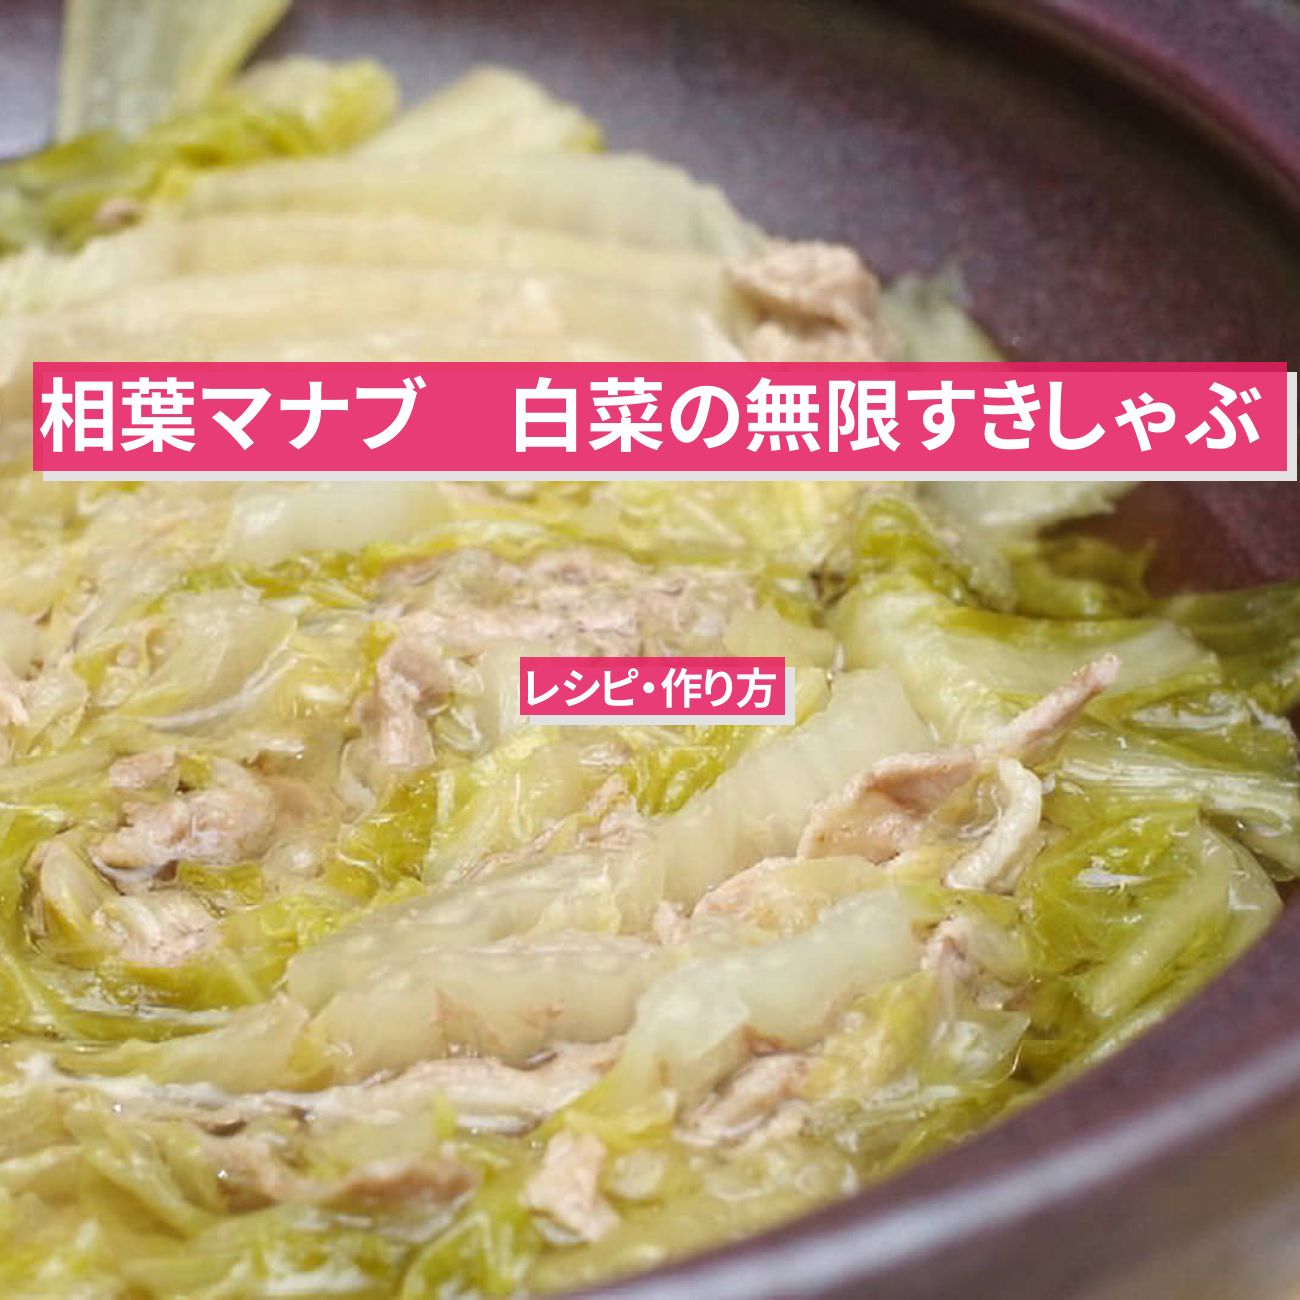 【相葉マナブ】『白菜の無限すきしゃぶ』日本橋ゆかり野永喜三夫さんのレシピ・作り方